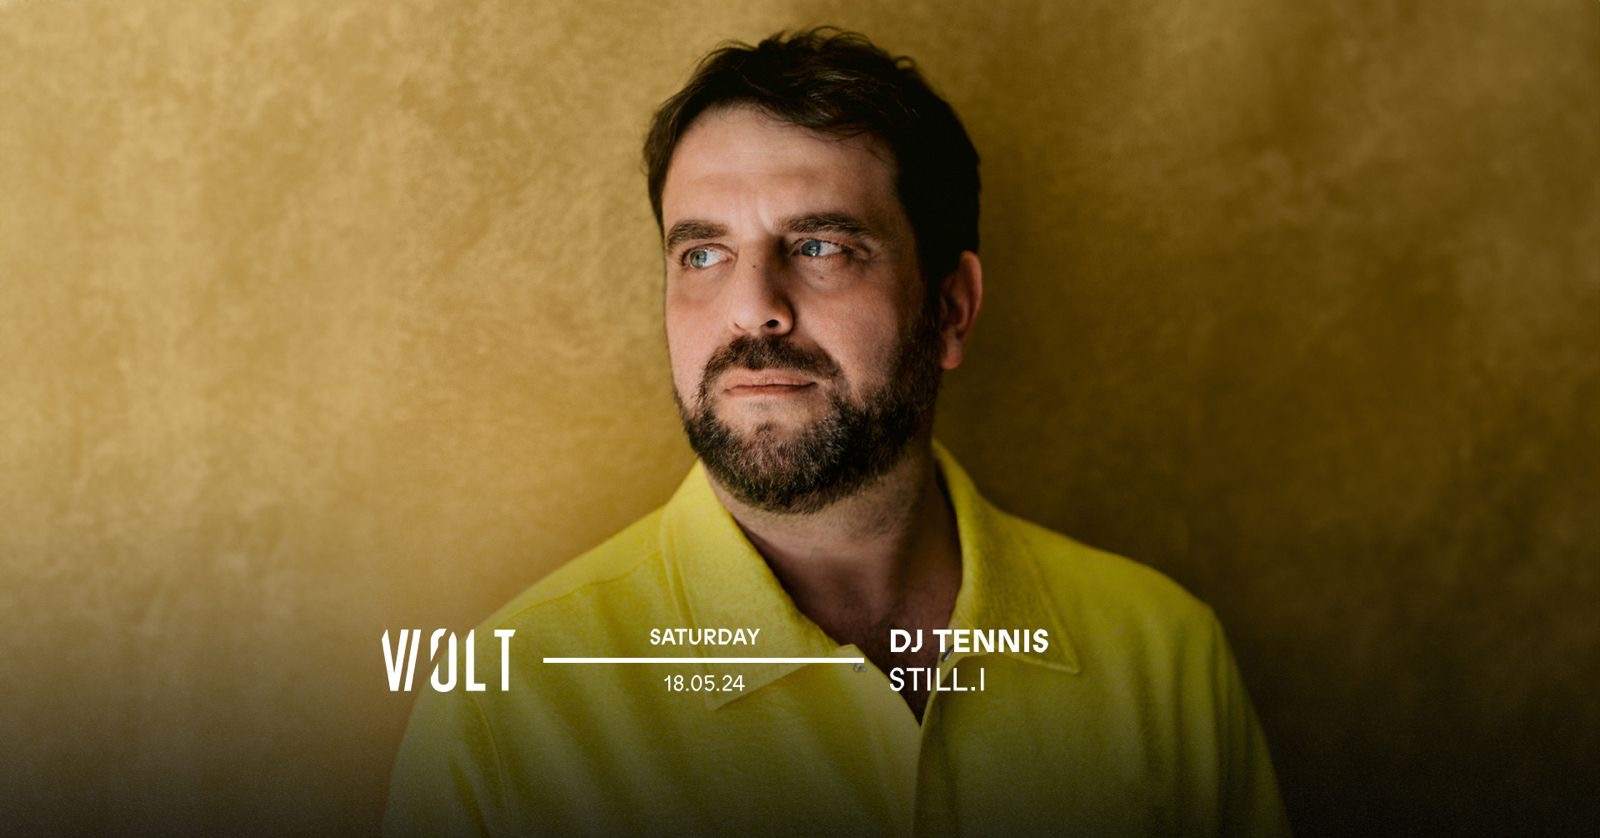 DJ Tennis + Still.i - フライヤー裏